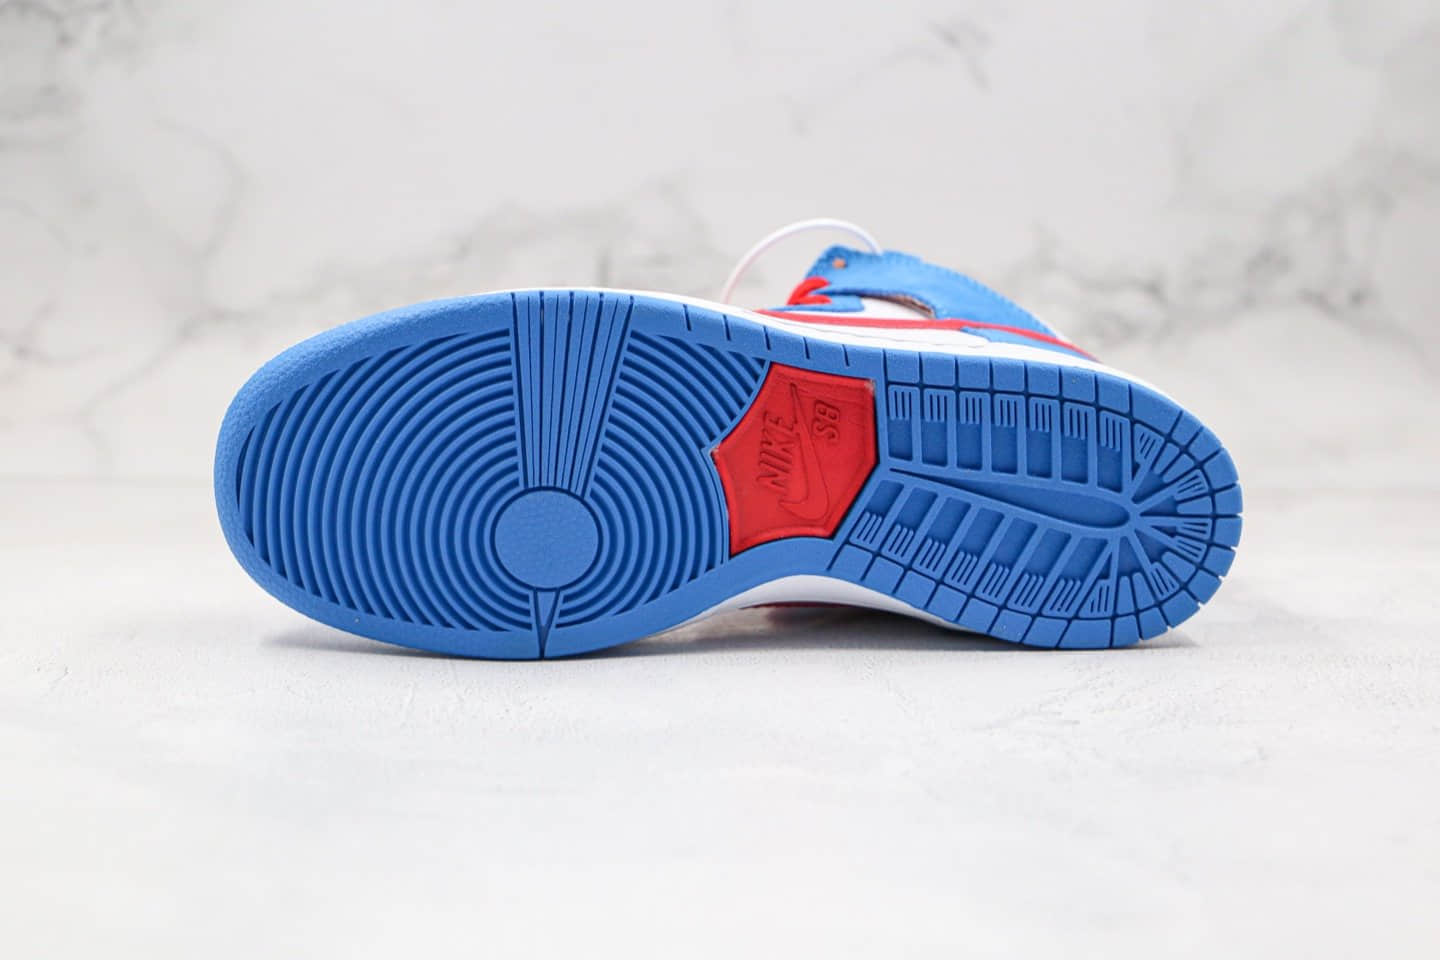 耐克Nike SB Dunk High Doraemon纯原版本高帮SB板鞋机器猫哆啦A梦蓝白红色原盒配件齐全 货号：CI2692-400